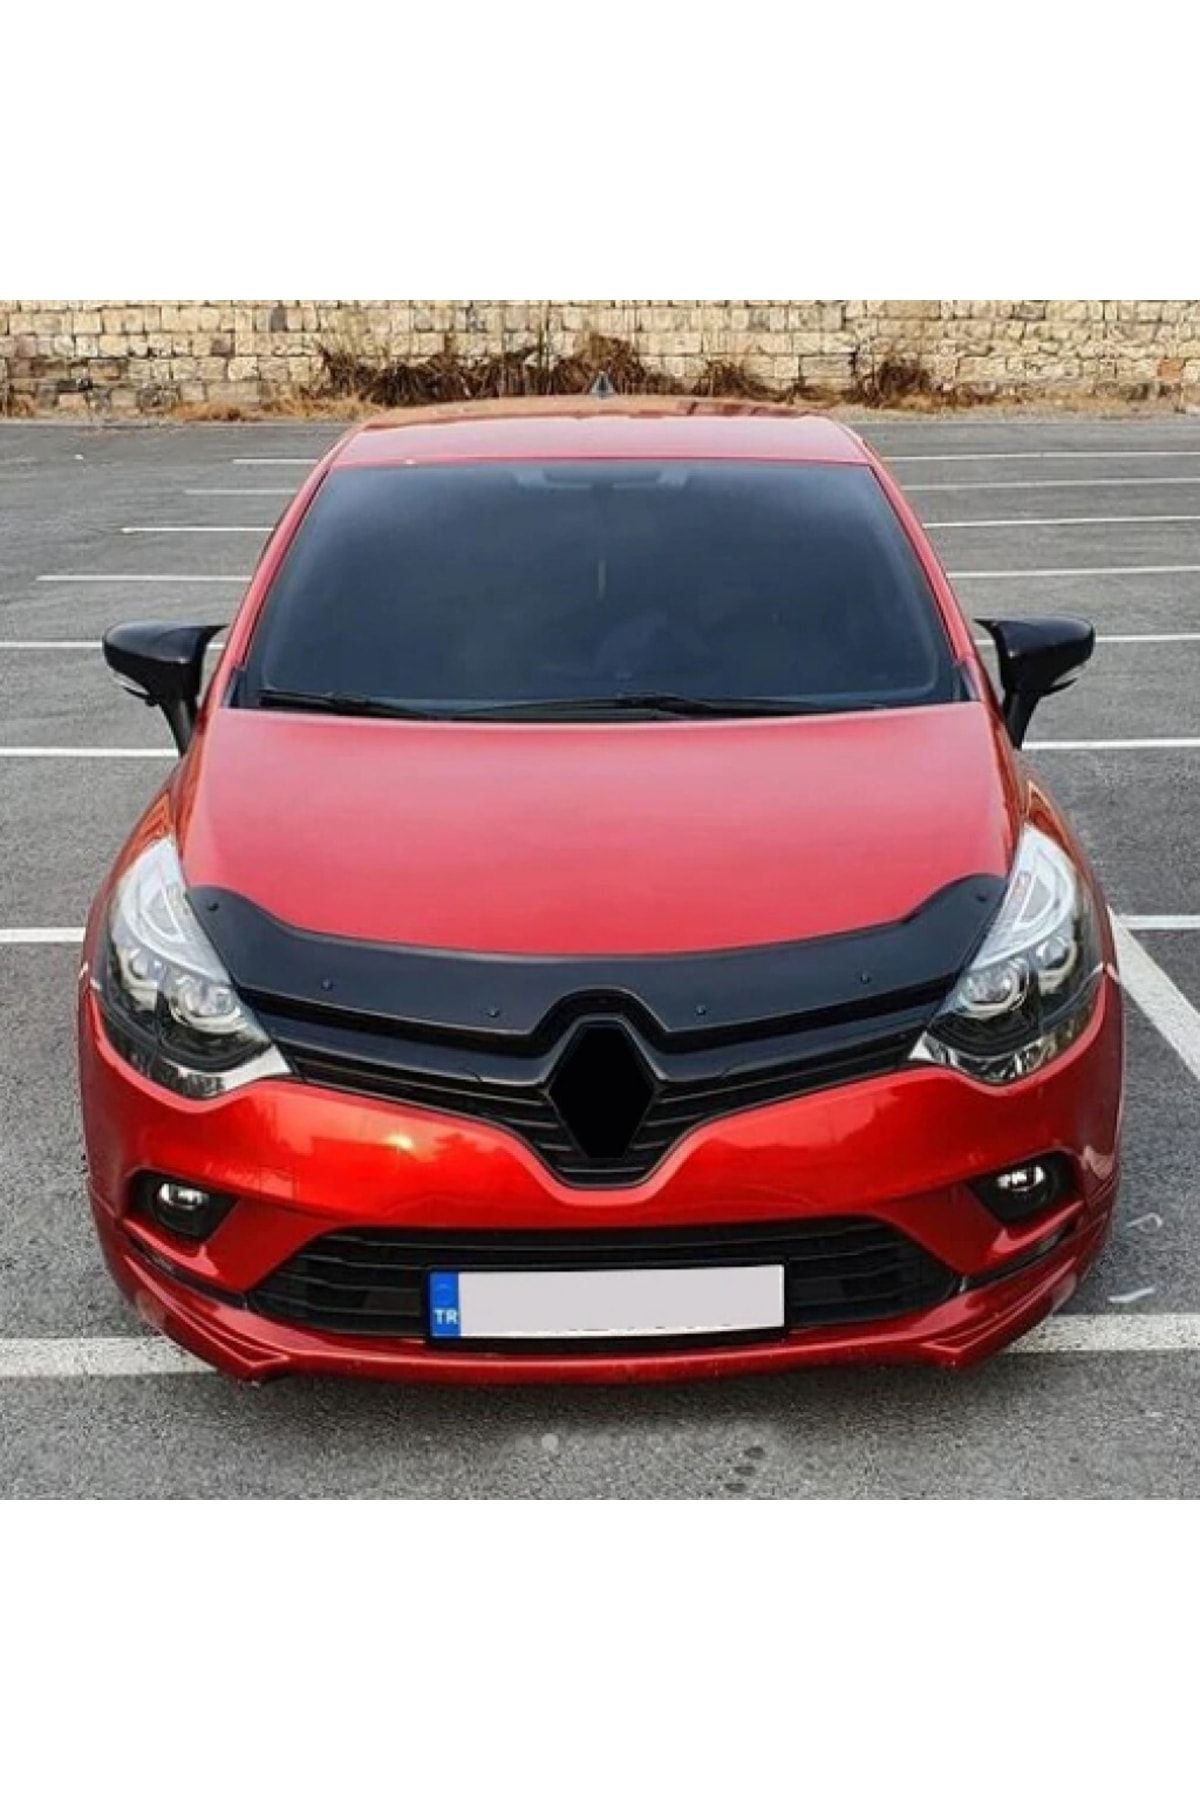 NamTuning Renault Clio 4 Yarasa Ayna Kapağı Batman Ayna